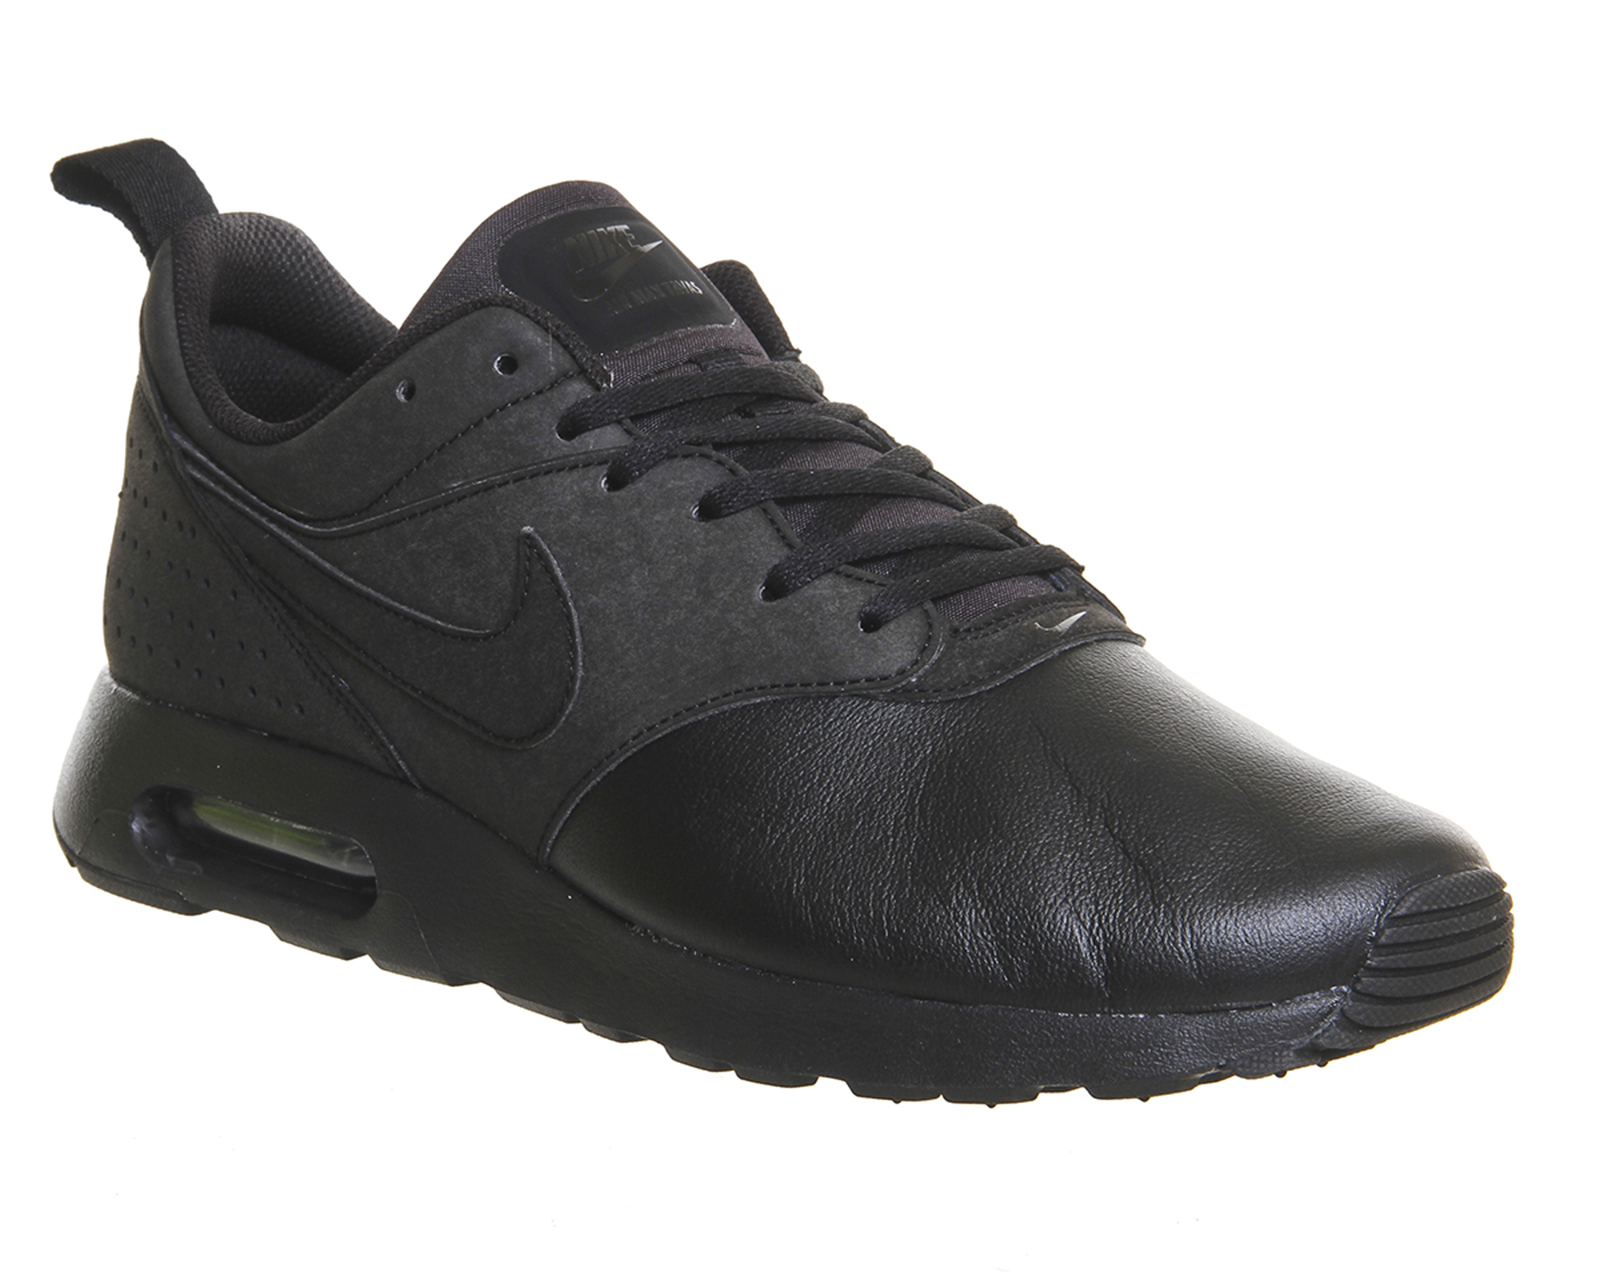 Nike Air Max Tavas Black Leather - His 